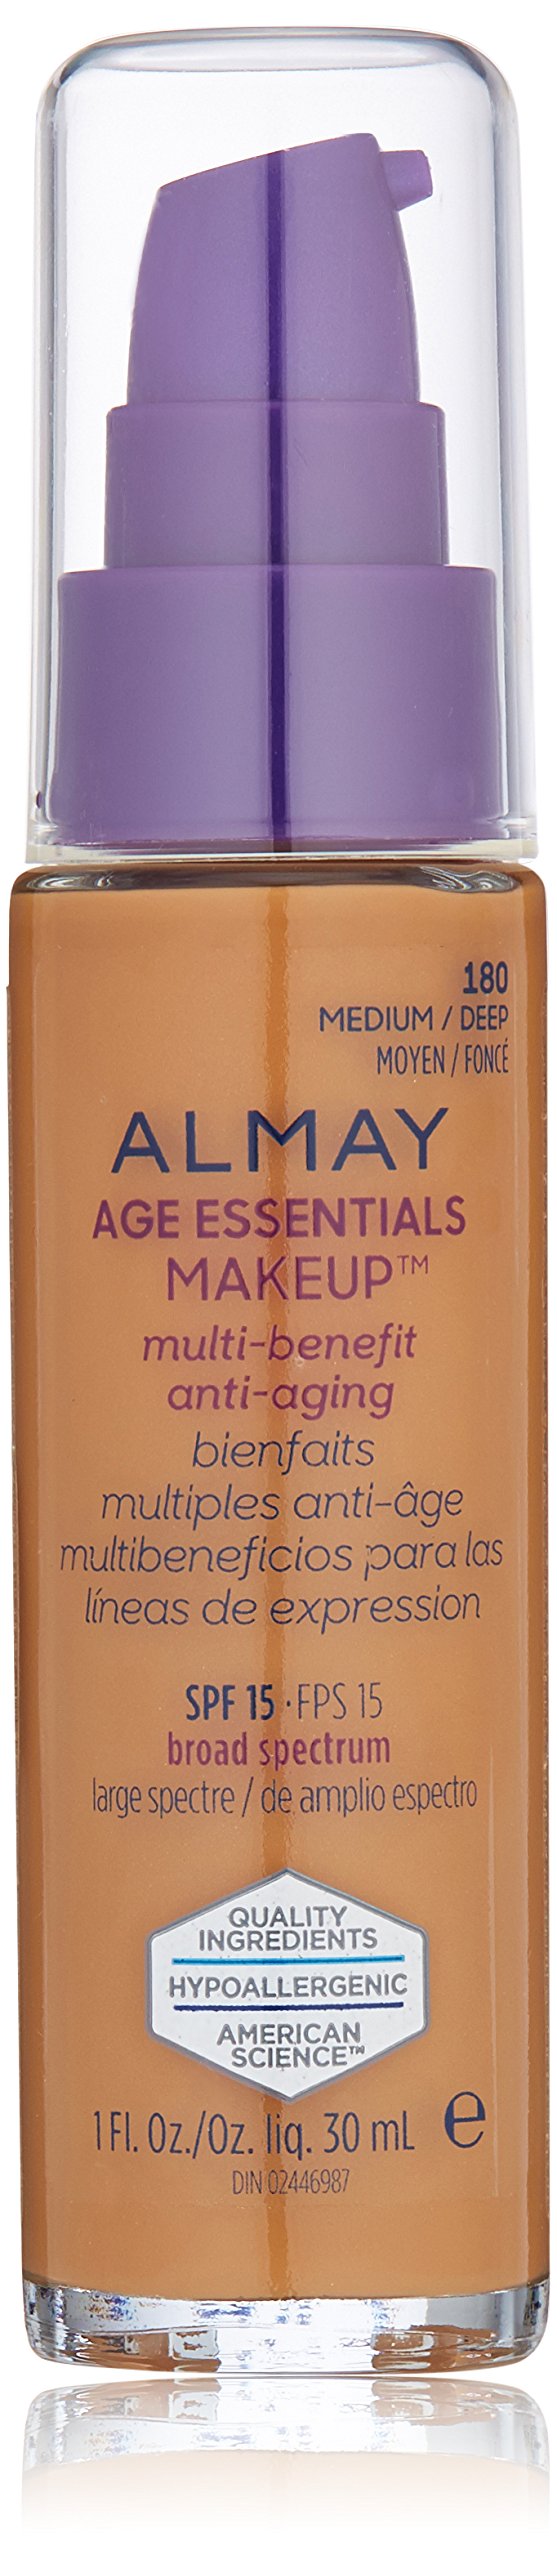 Almay Age Essentials Makeup, Medium Deep